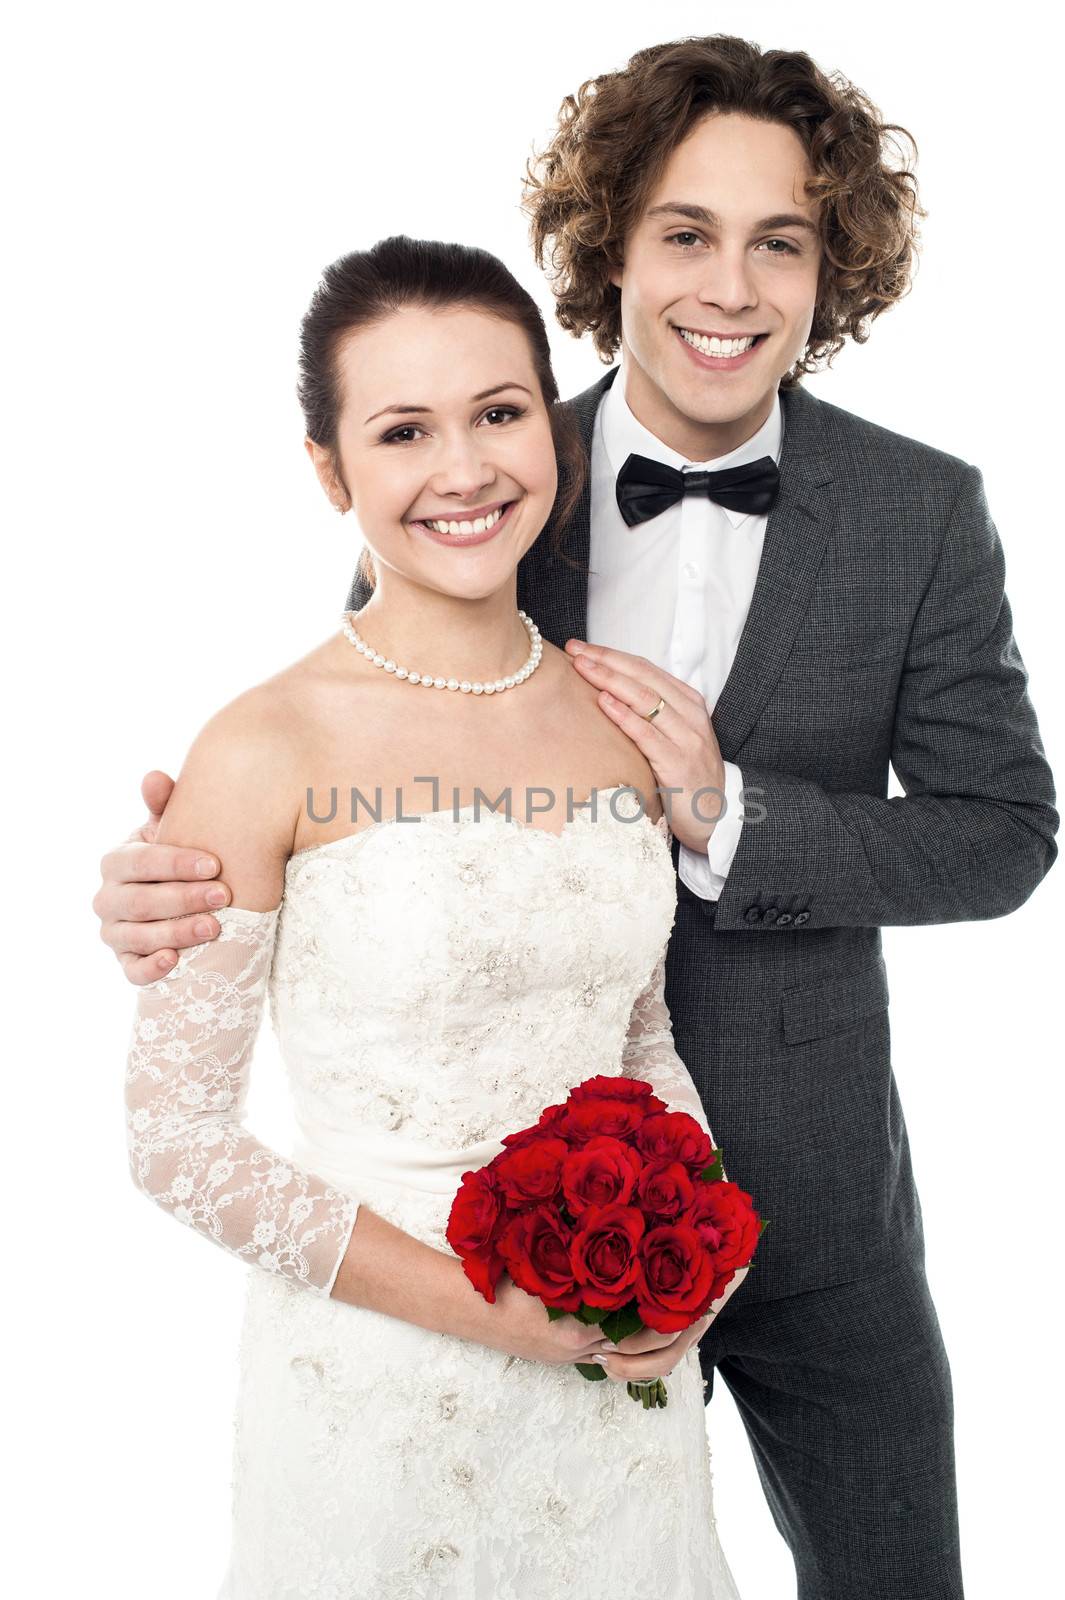 Smiling newlywed couple isolated against white background